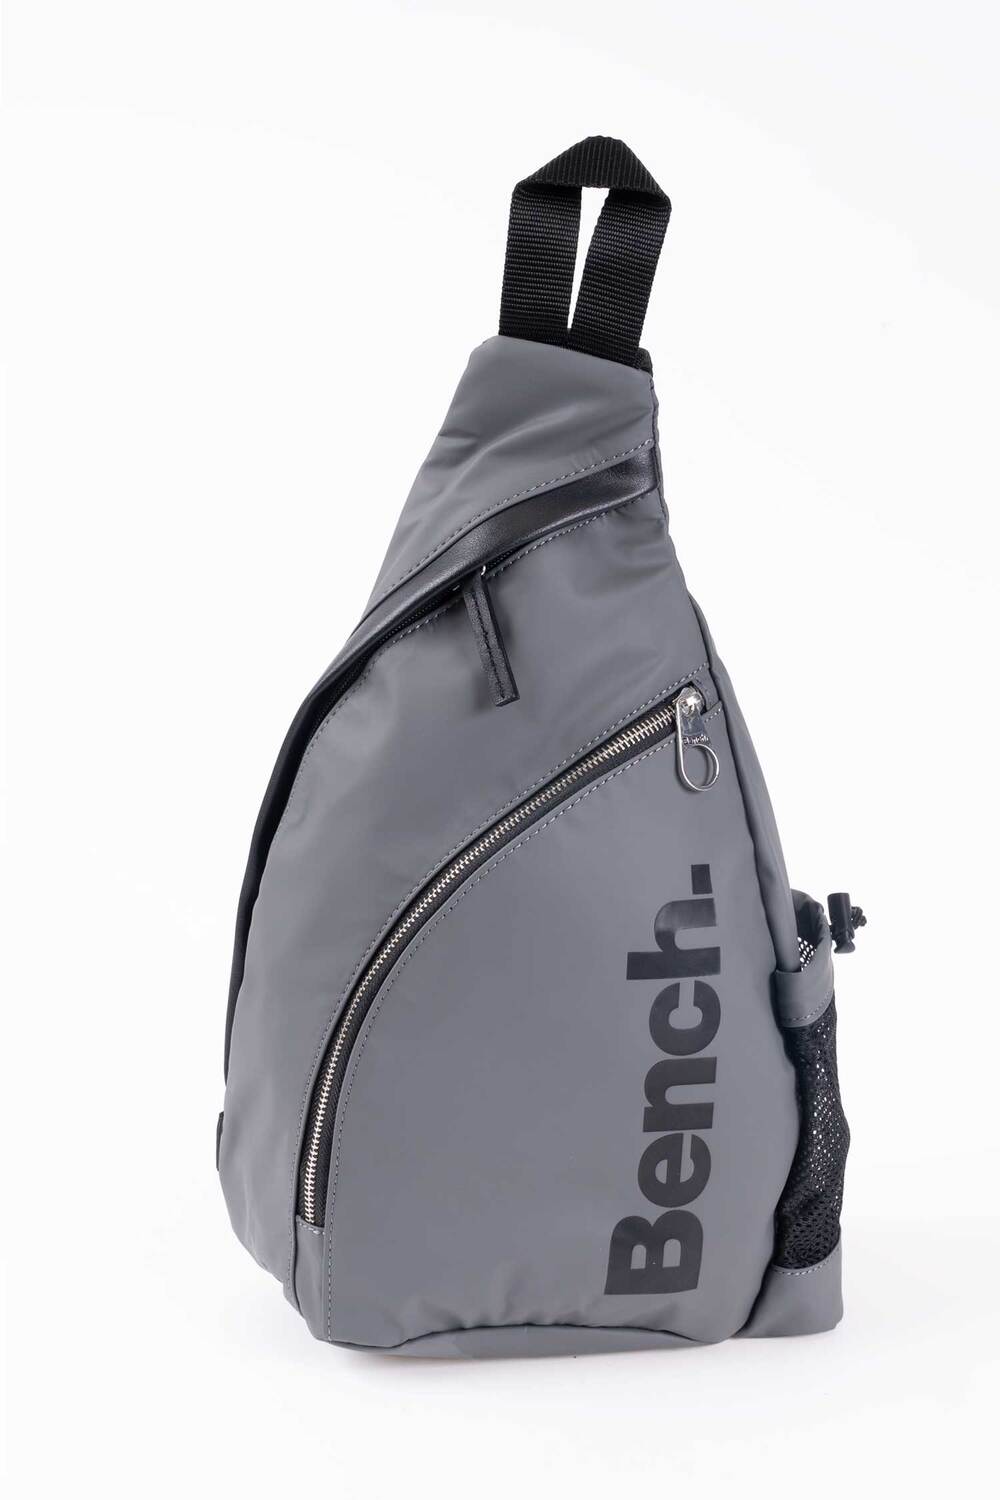 Bench - Sac à dos à bandoulière croisée avec sangle d'épaule réversible.  Colour: grey, Fr